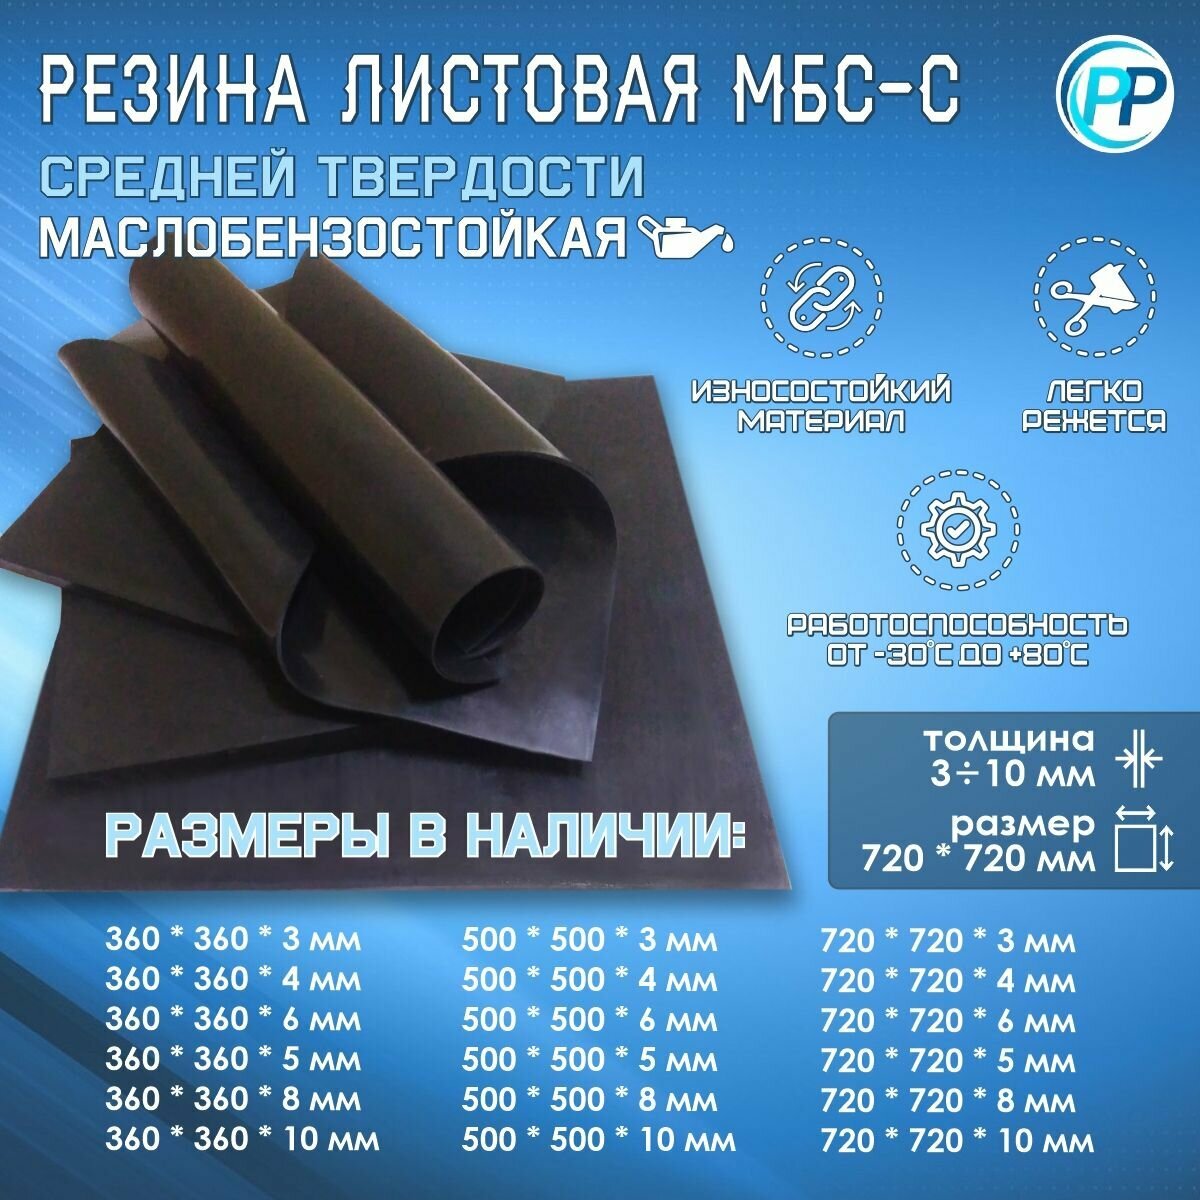 Резина листовая 2-ф 1 МБС (Маслобензостоикая) 10 мм 720х720 мм